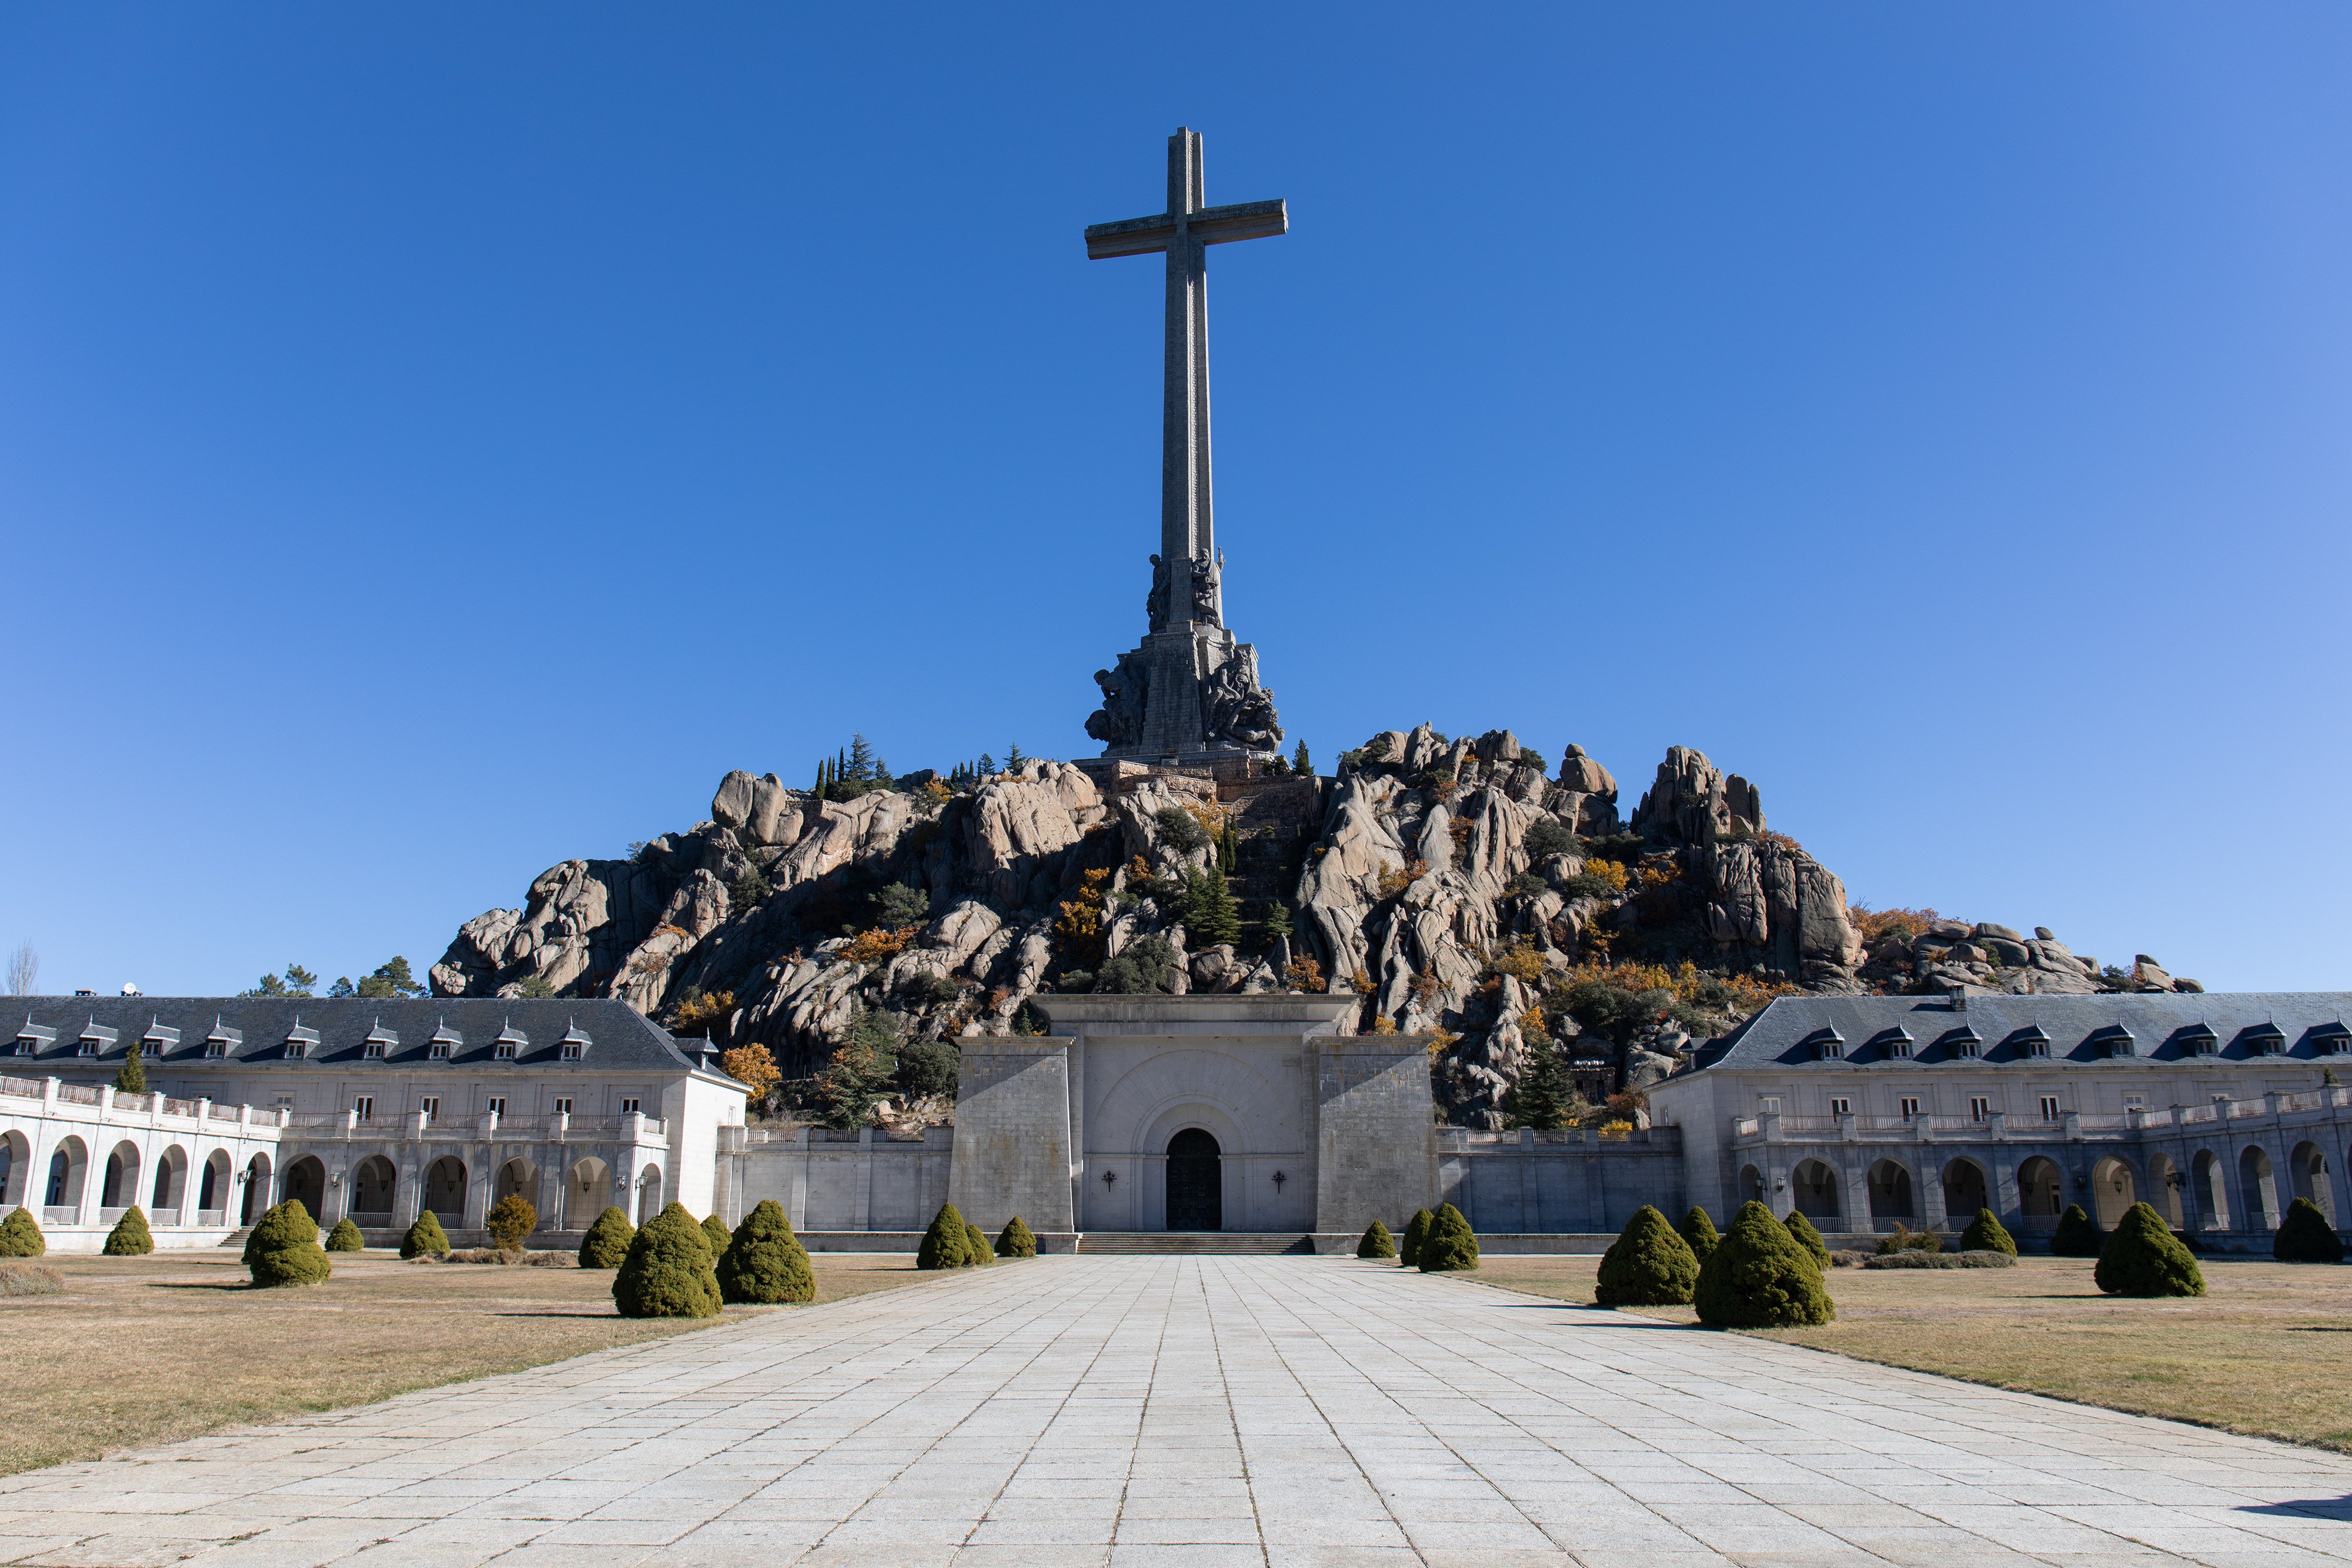 El Gobierno busca monjes "menos fachas" para el Valle de los Caídos